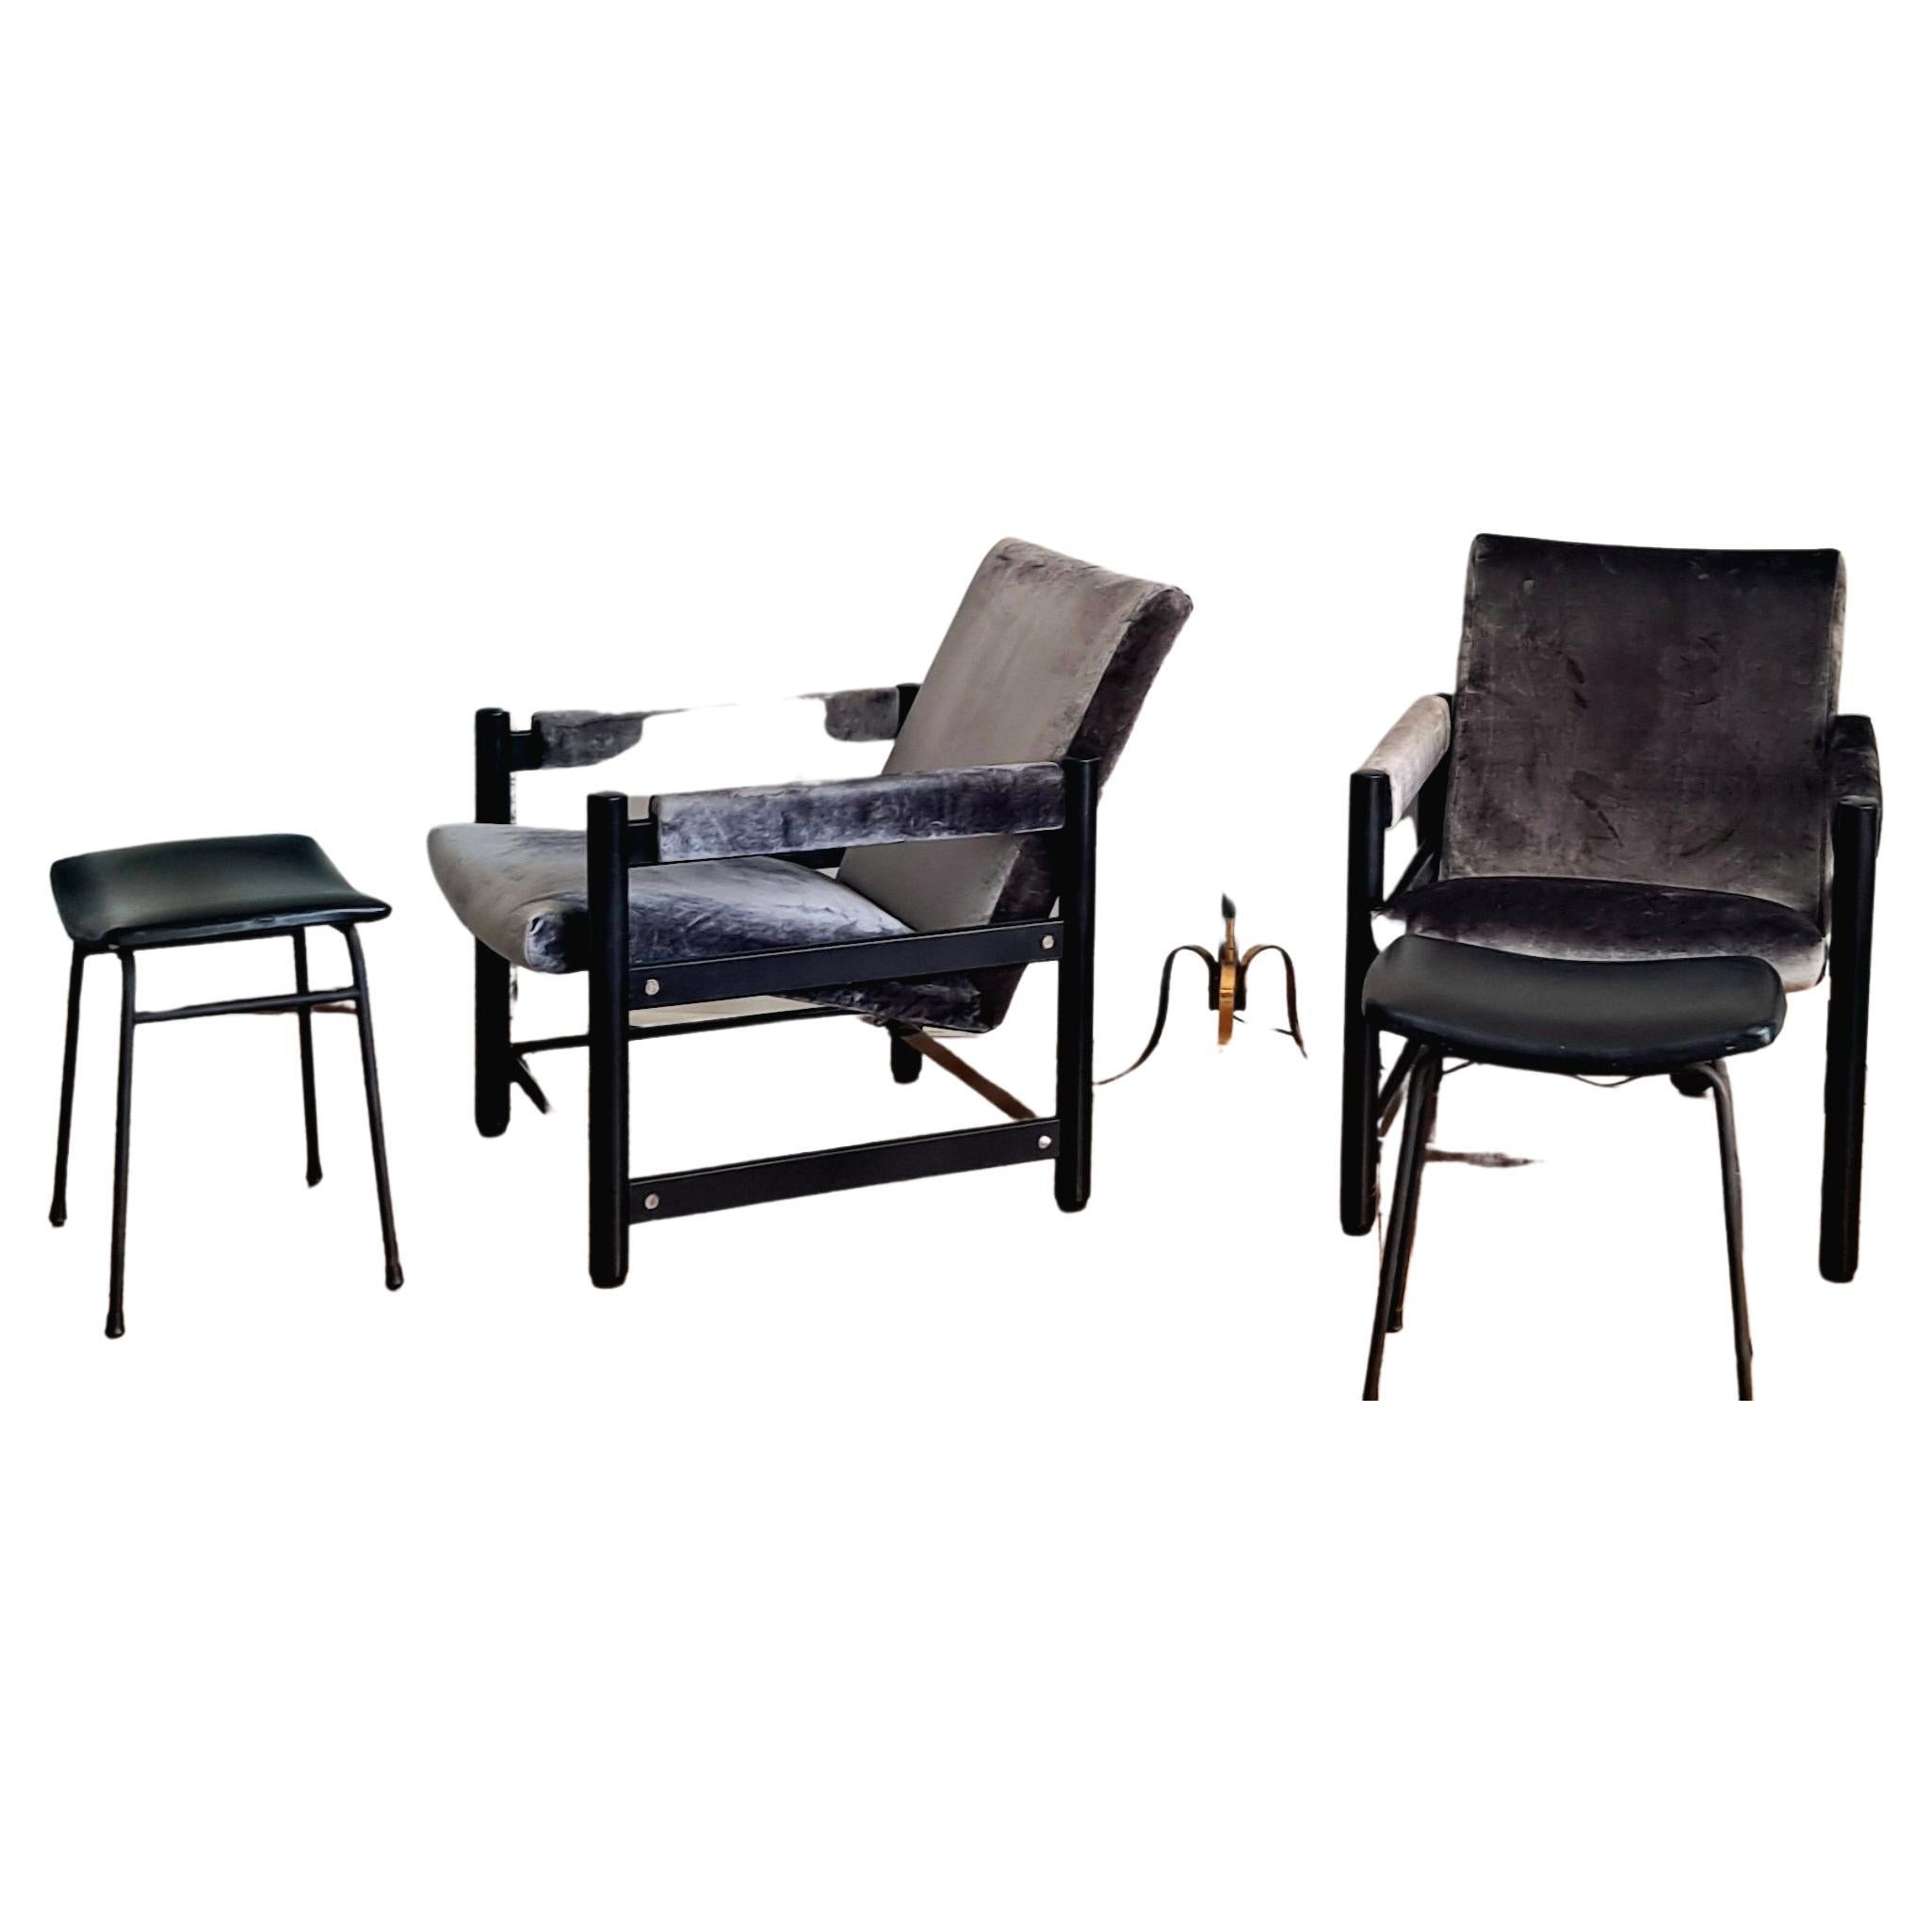 Italienisches Stuhlpaar, schwarz lackierte Stühle mit verchromten Seitenteilen und  neue graue Samtpolsterung. Stühle Sitze auf der Metallbasis, wie Sie auf den Fotos sehen können, so dass jeder Stuhl ist in zwei Teilen. Die Stühle sind bequem und